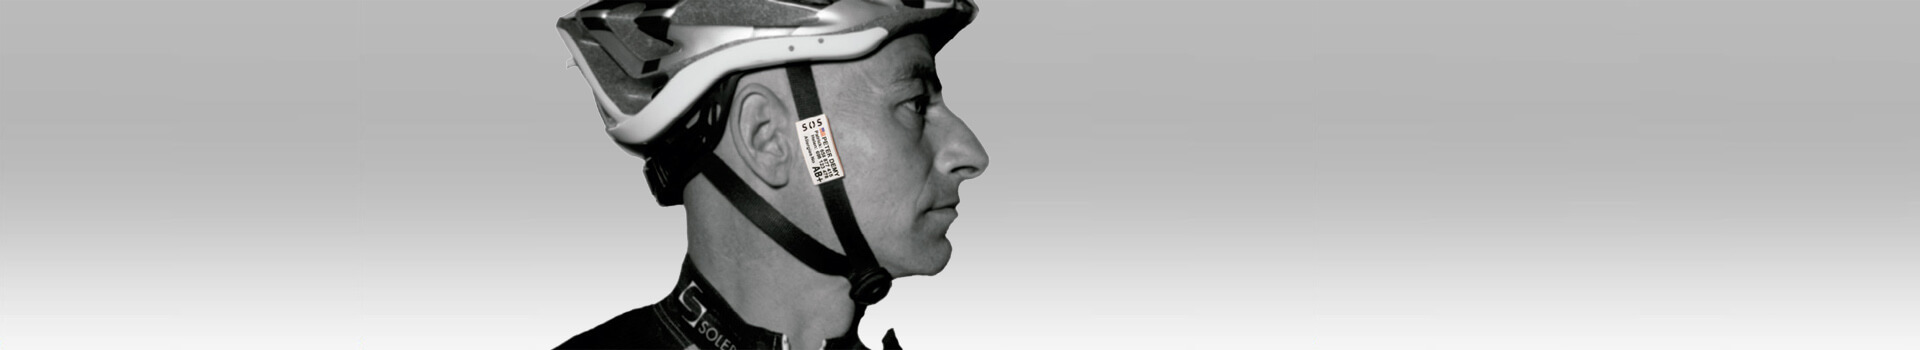 Targhetta identificativa di sicurezza per ciclisti